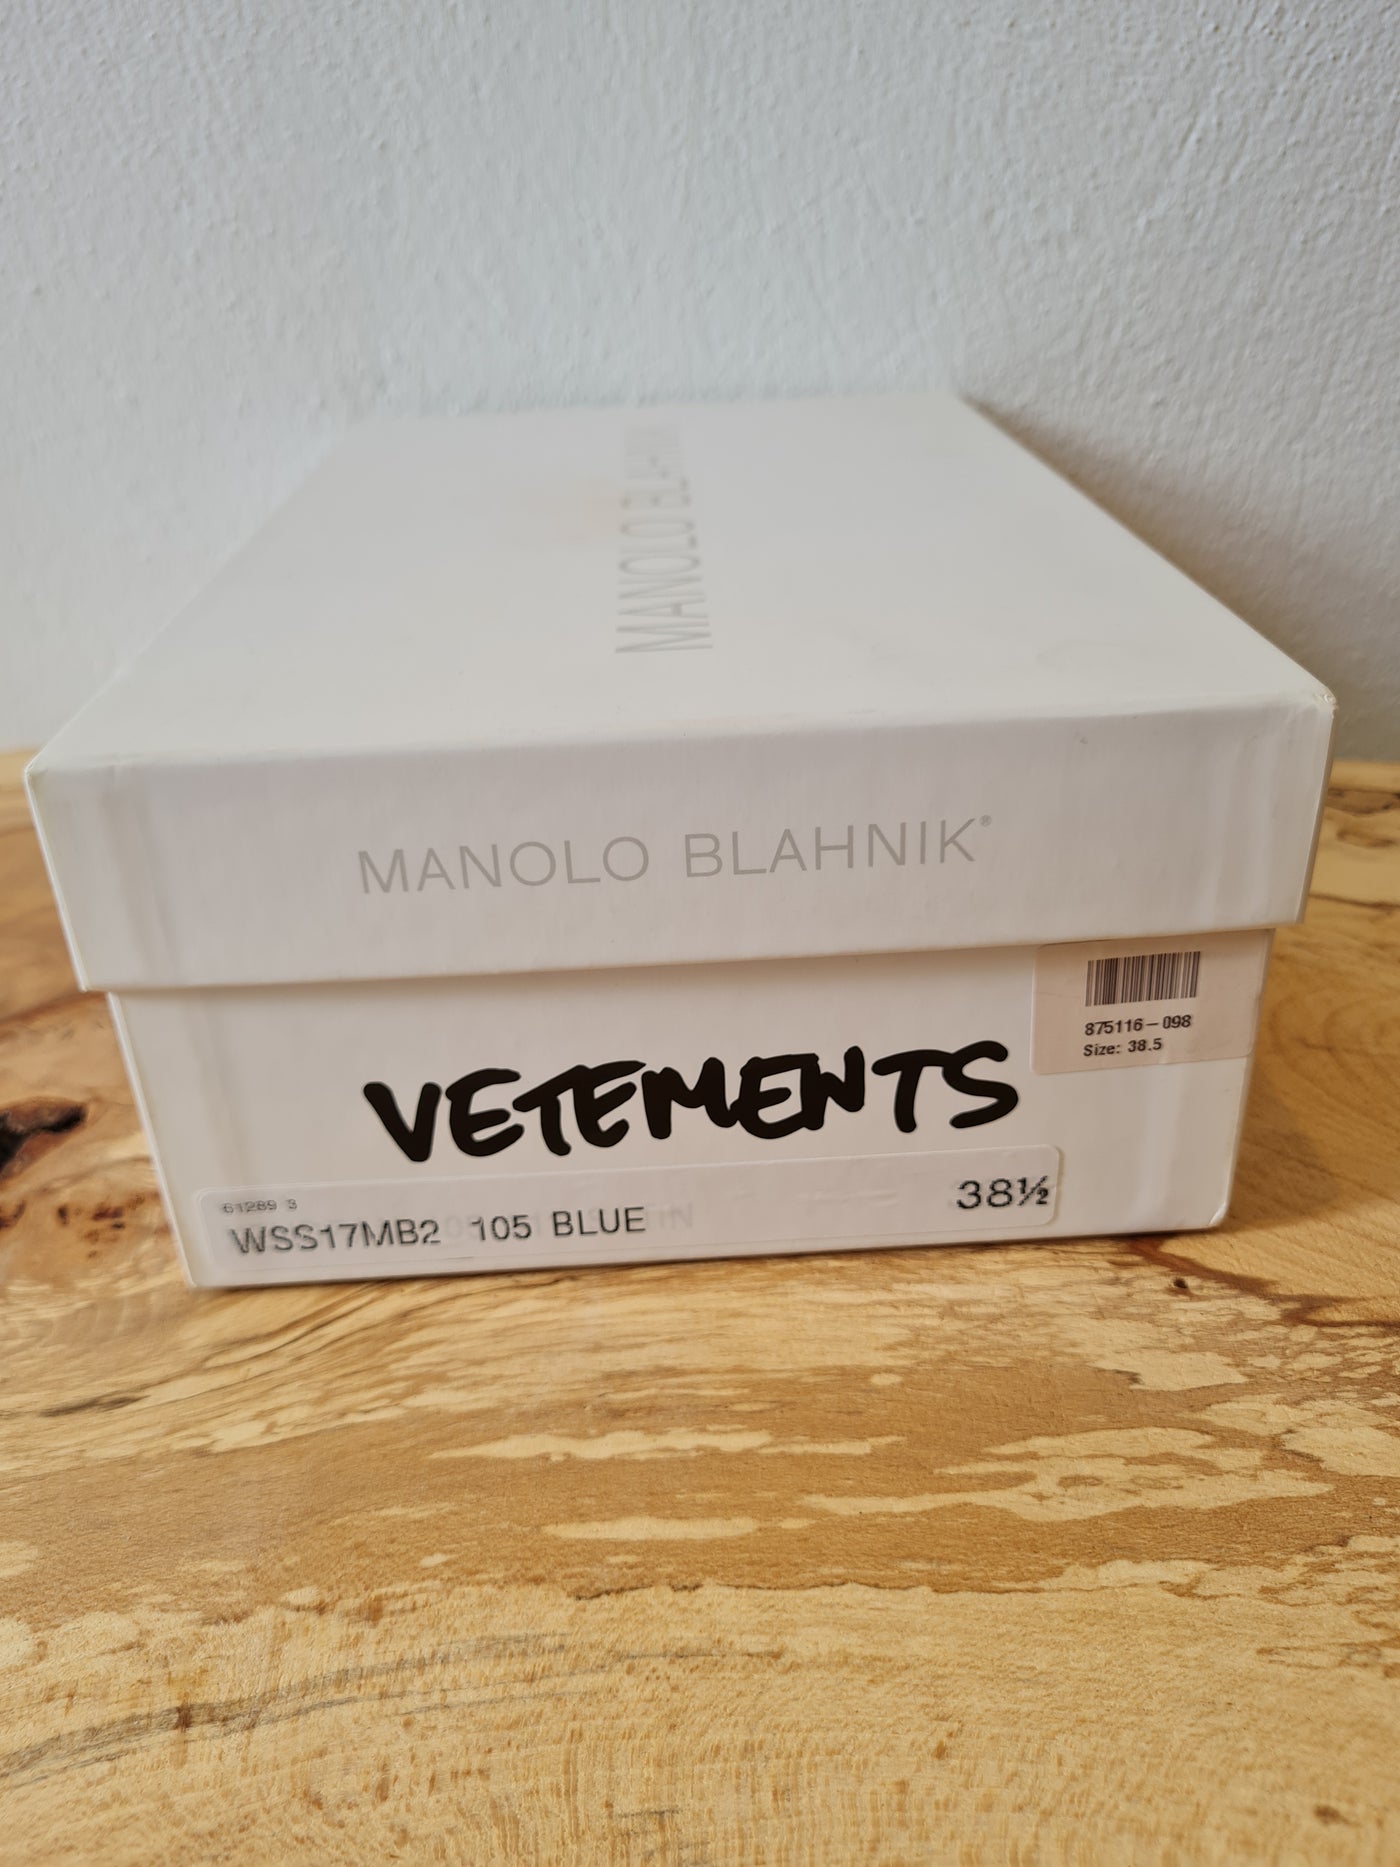 Manolo Blahnik Vetements Size 5.5